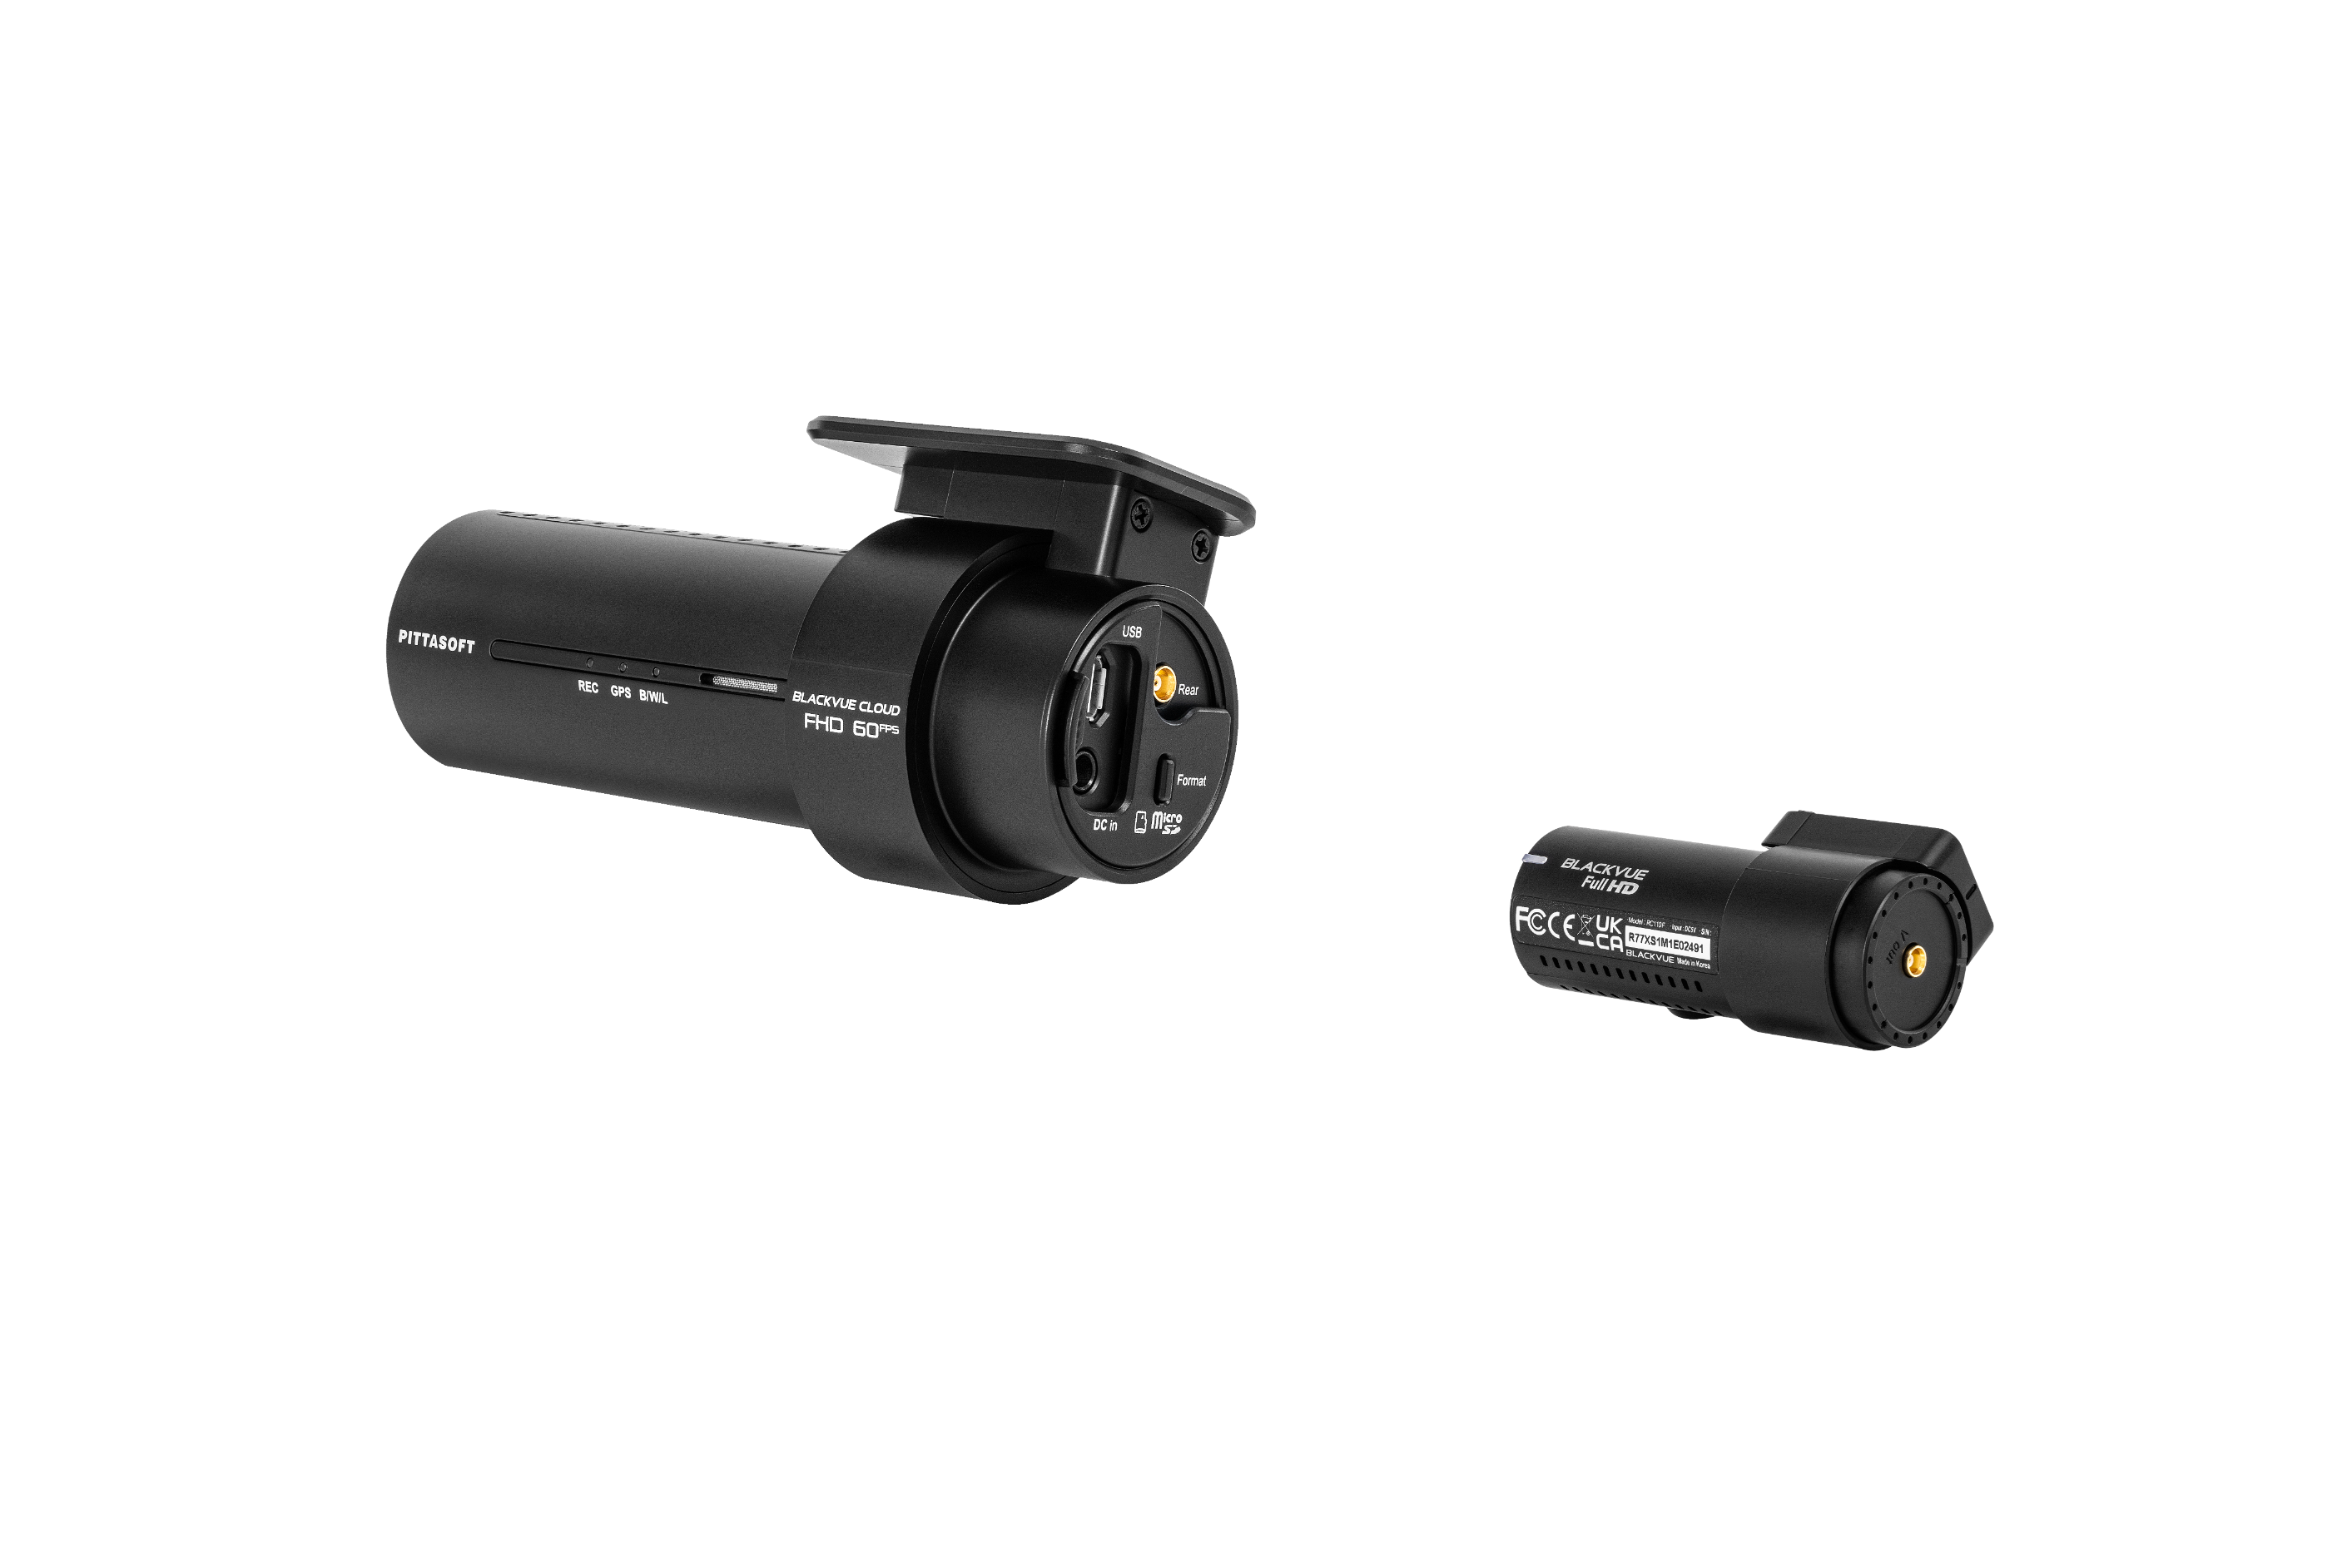 BlackVue DR770X-2CH | Dual-channel Dash Cam with BlackVue Cloud connectivity